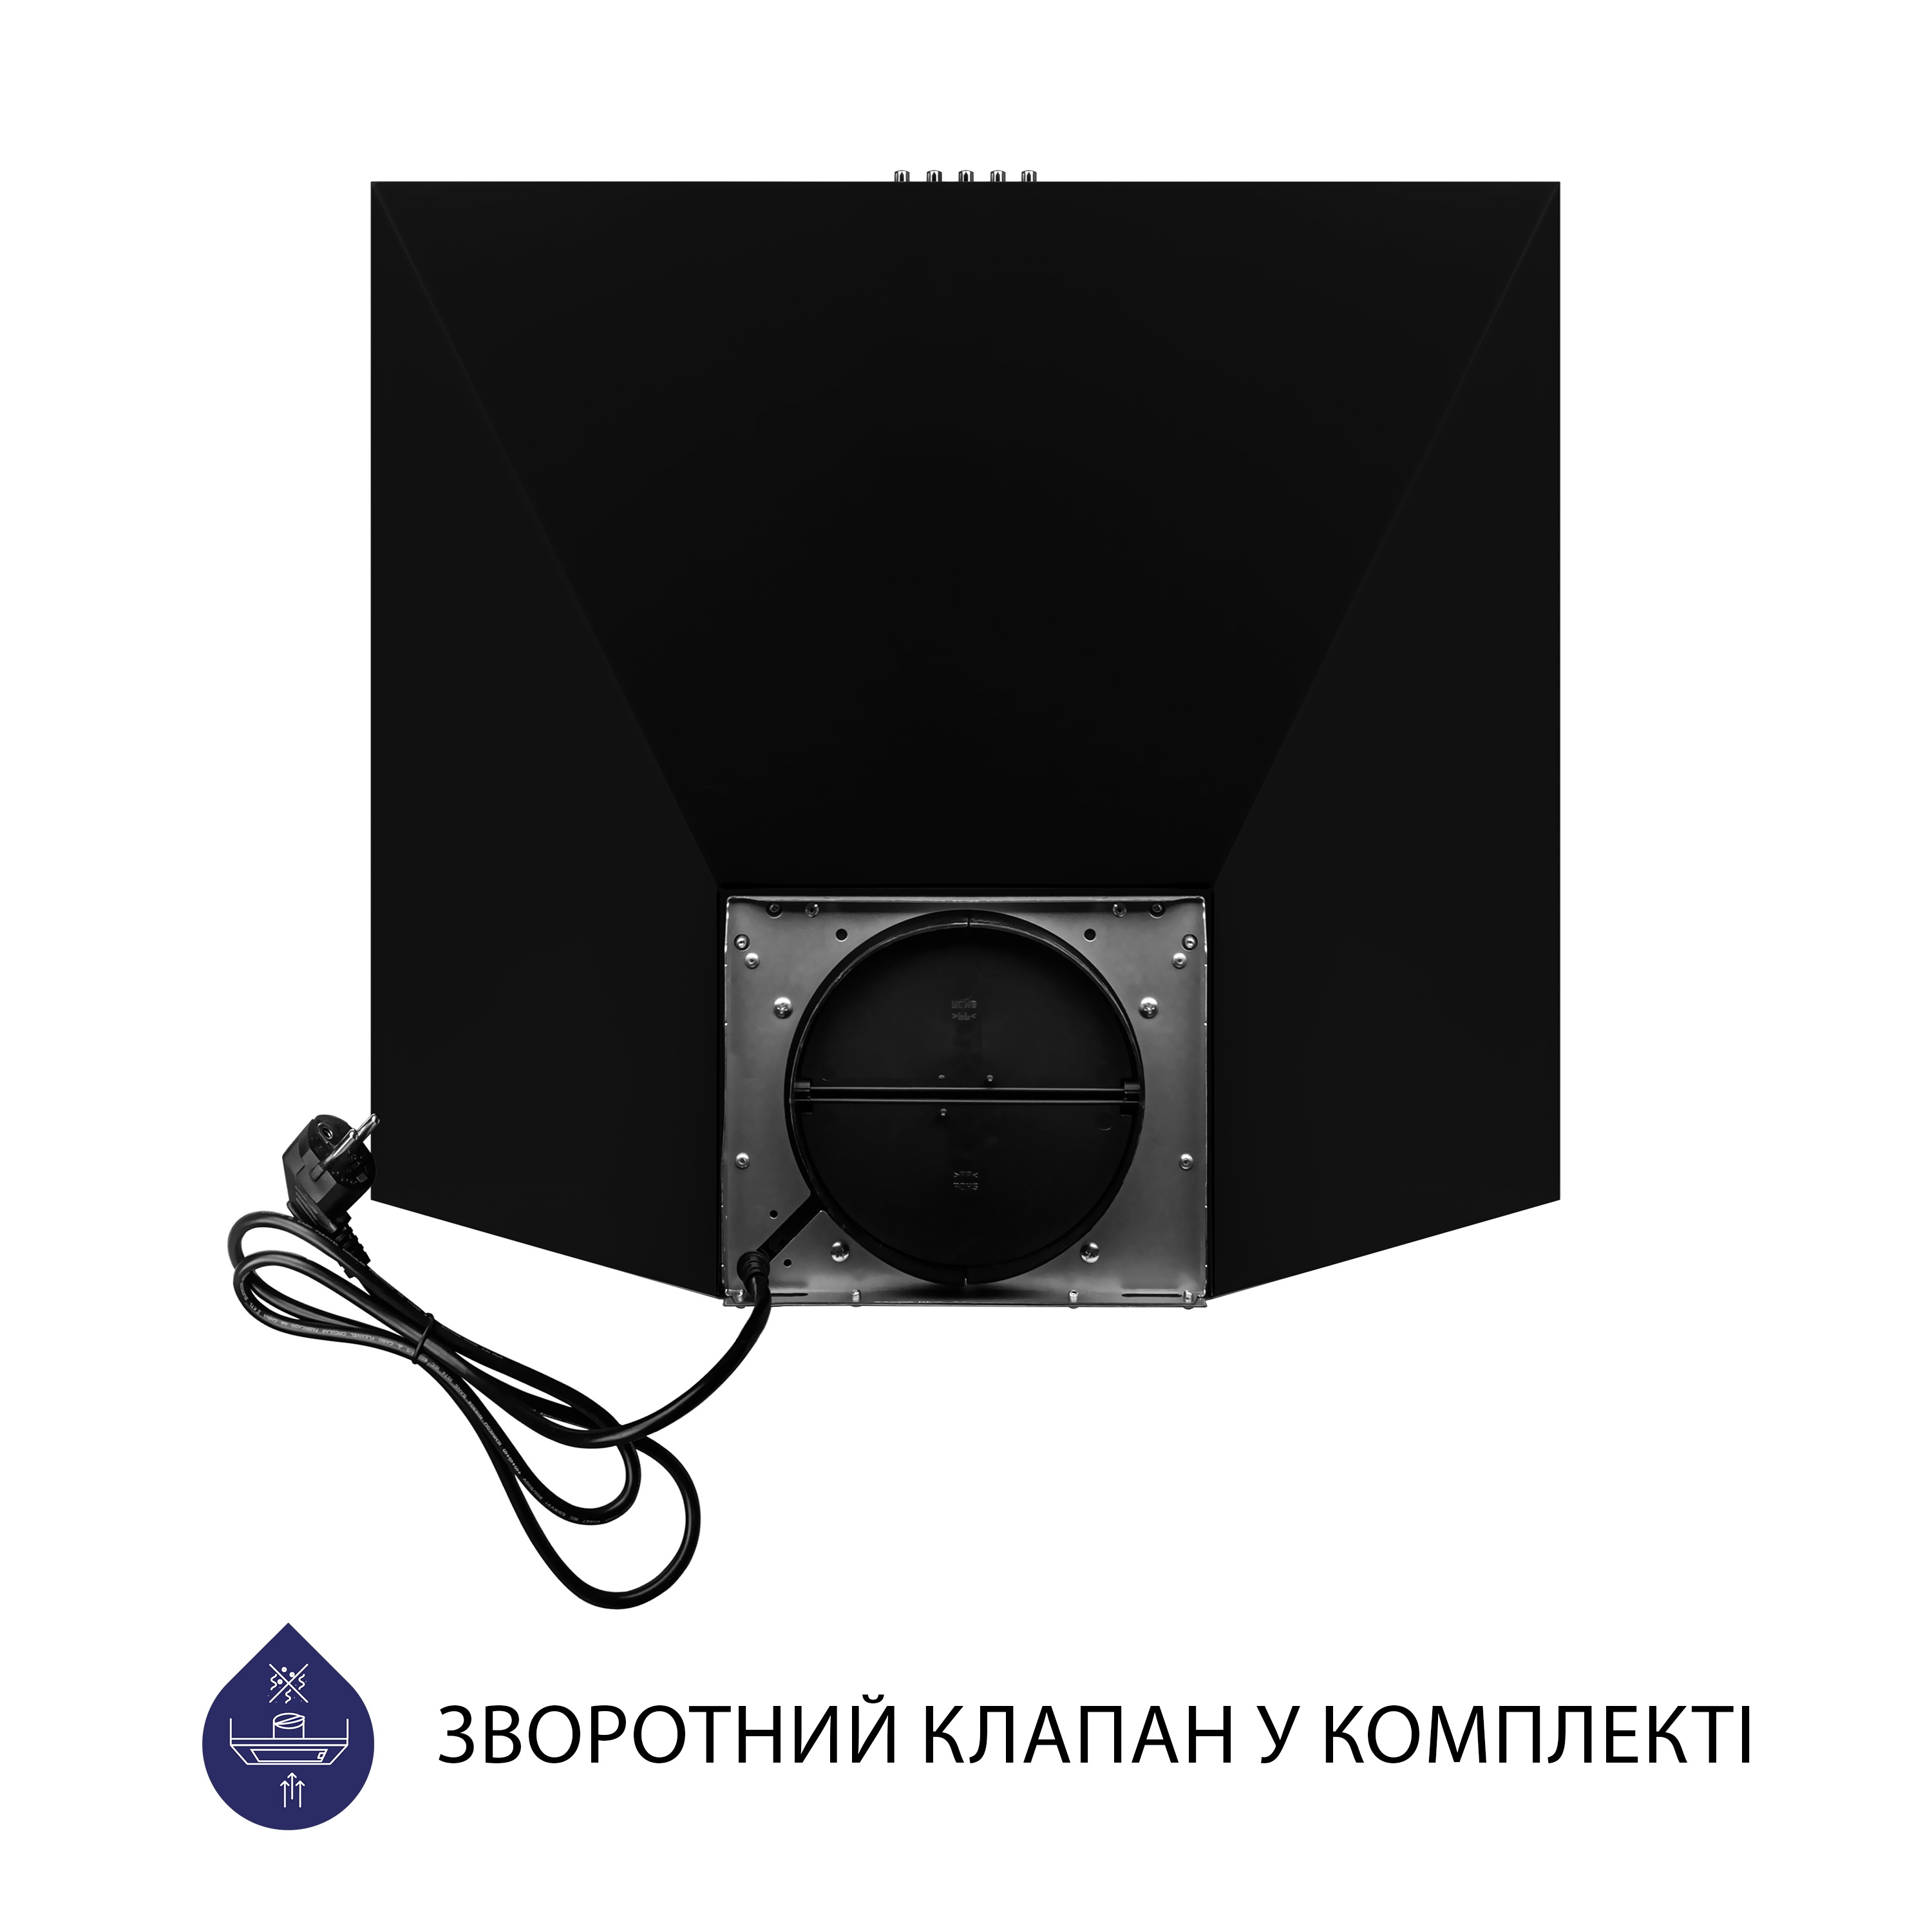 Витяжка кухонная купольная Minola HK 5214 BL 700 LED характеристики - фотография 7